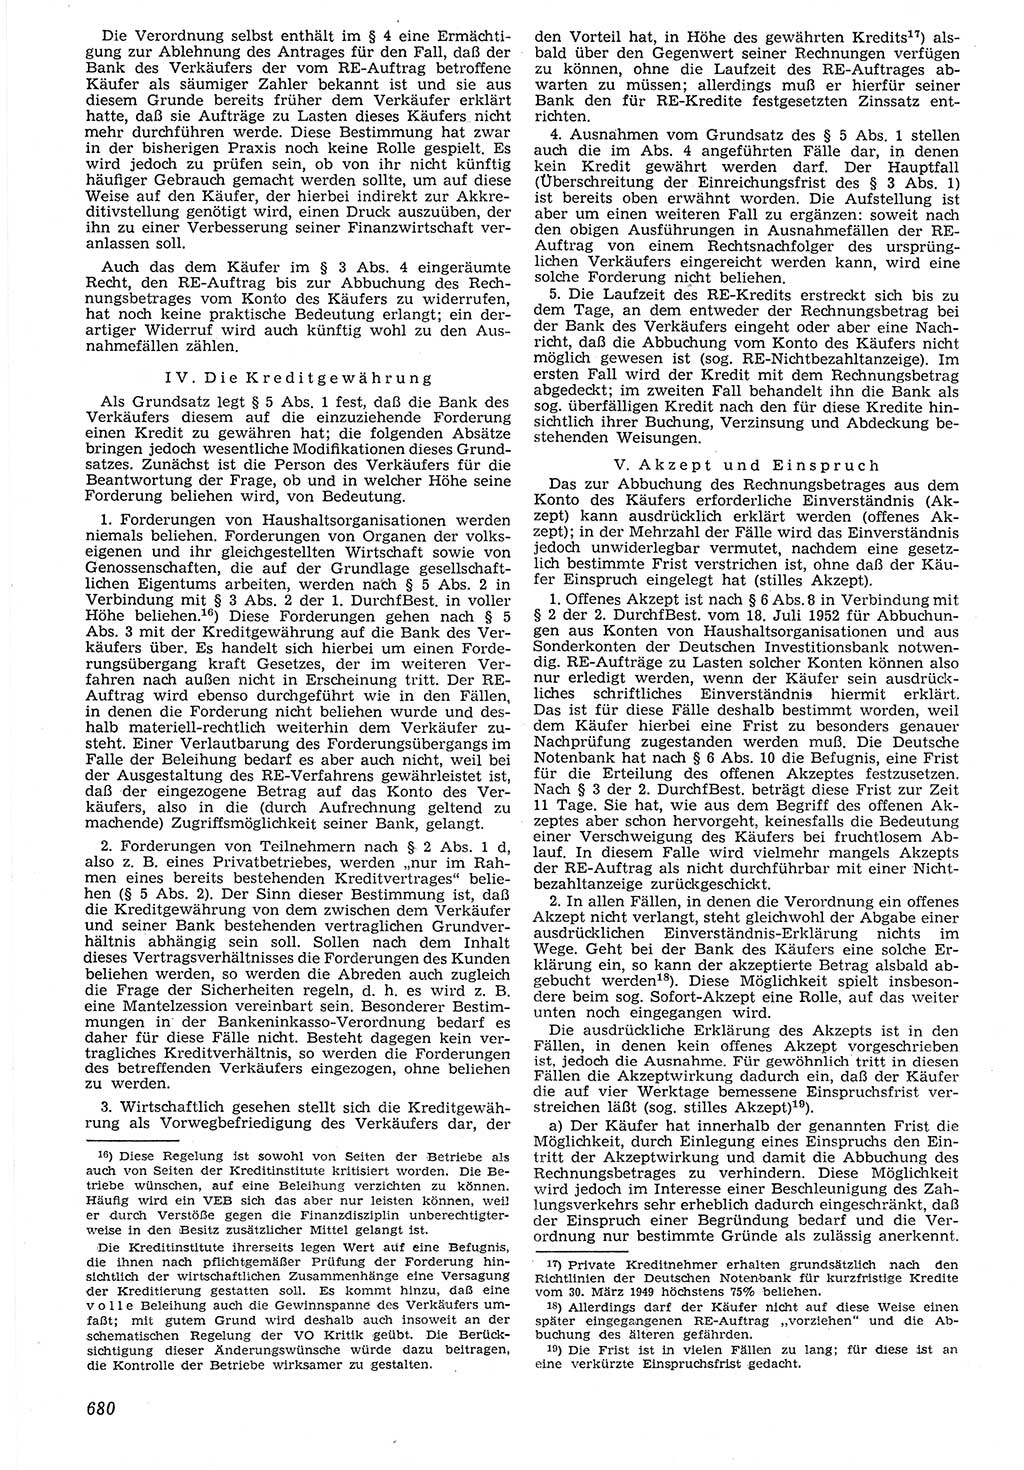 Neue Justiz (NJ), Zeitschrift für Recht und Rechtswissenschaft [Deutsche Demokratische Republik (DDR)], 7. Jahrgang 1953, Seite 680 (NJ DDR 1953, S. 680)